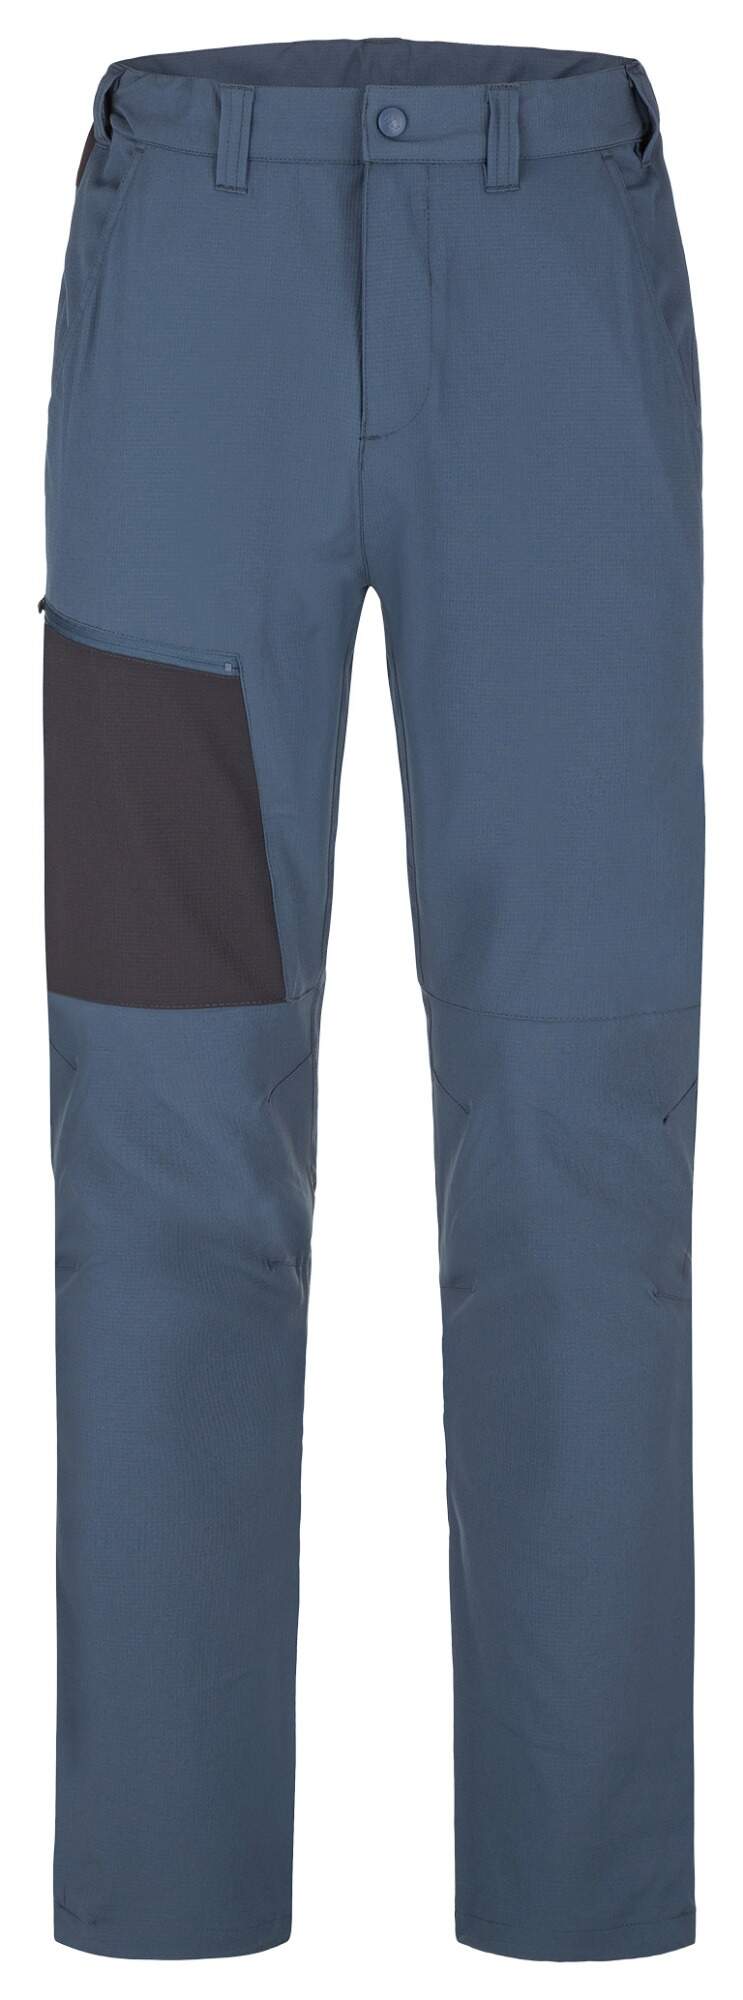 Pánské sportovní kalhoty Loap Uzer modrá S